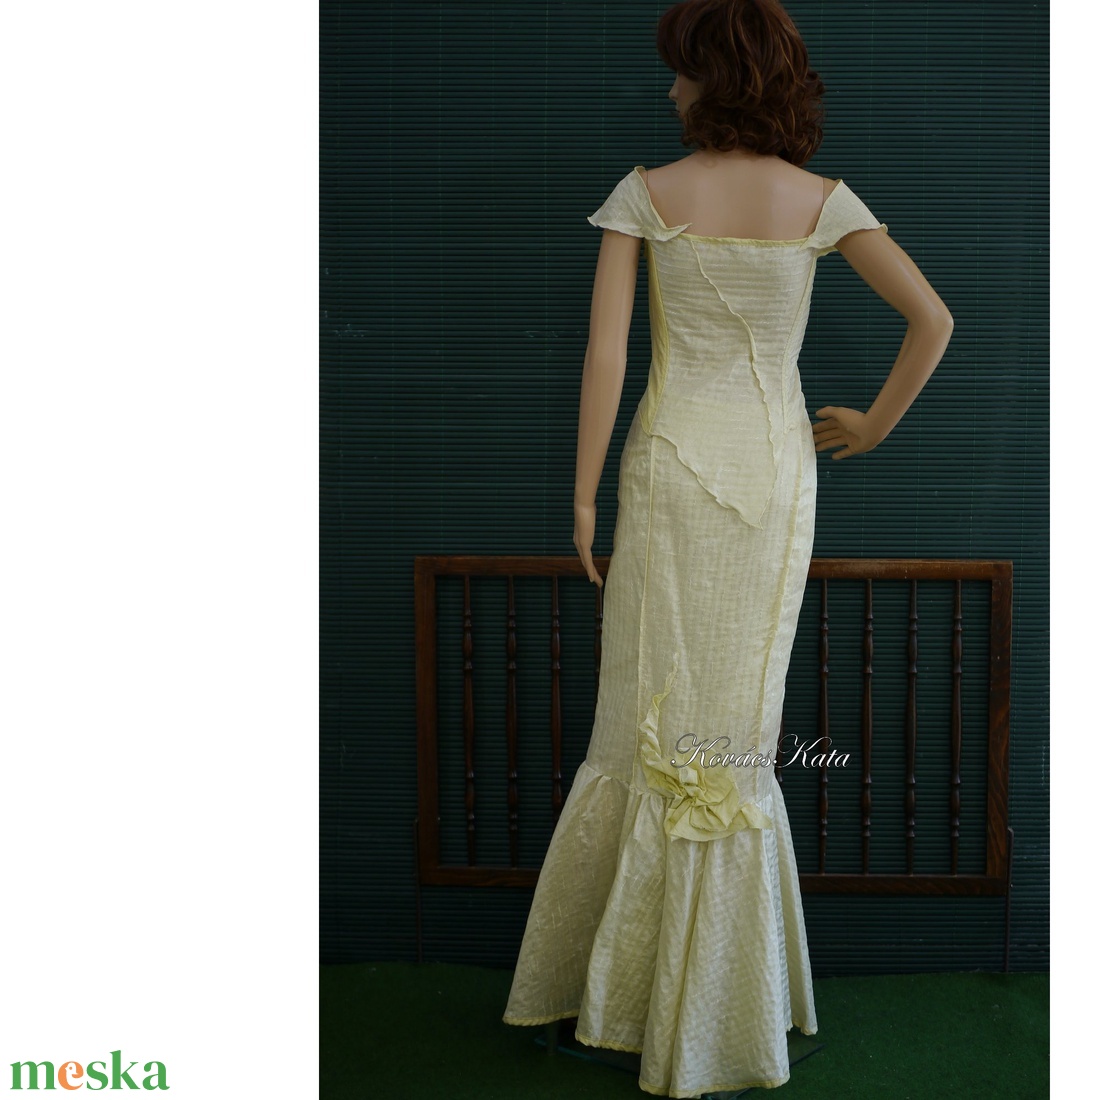 NINA - alternatív menyasszonyi ruha - esküvő - ruha - menyasszonyi ruha - Meska.hu